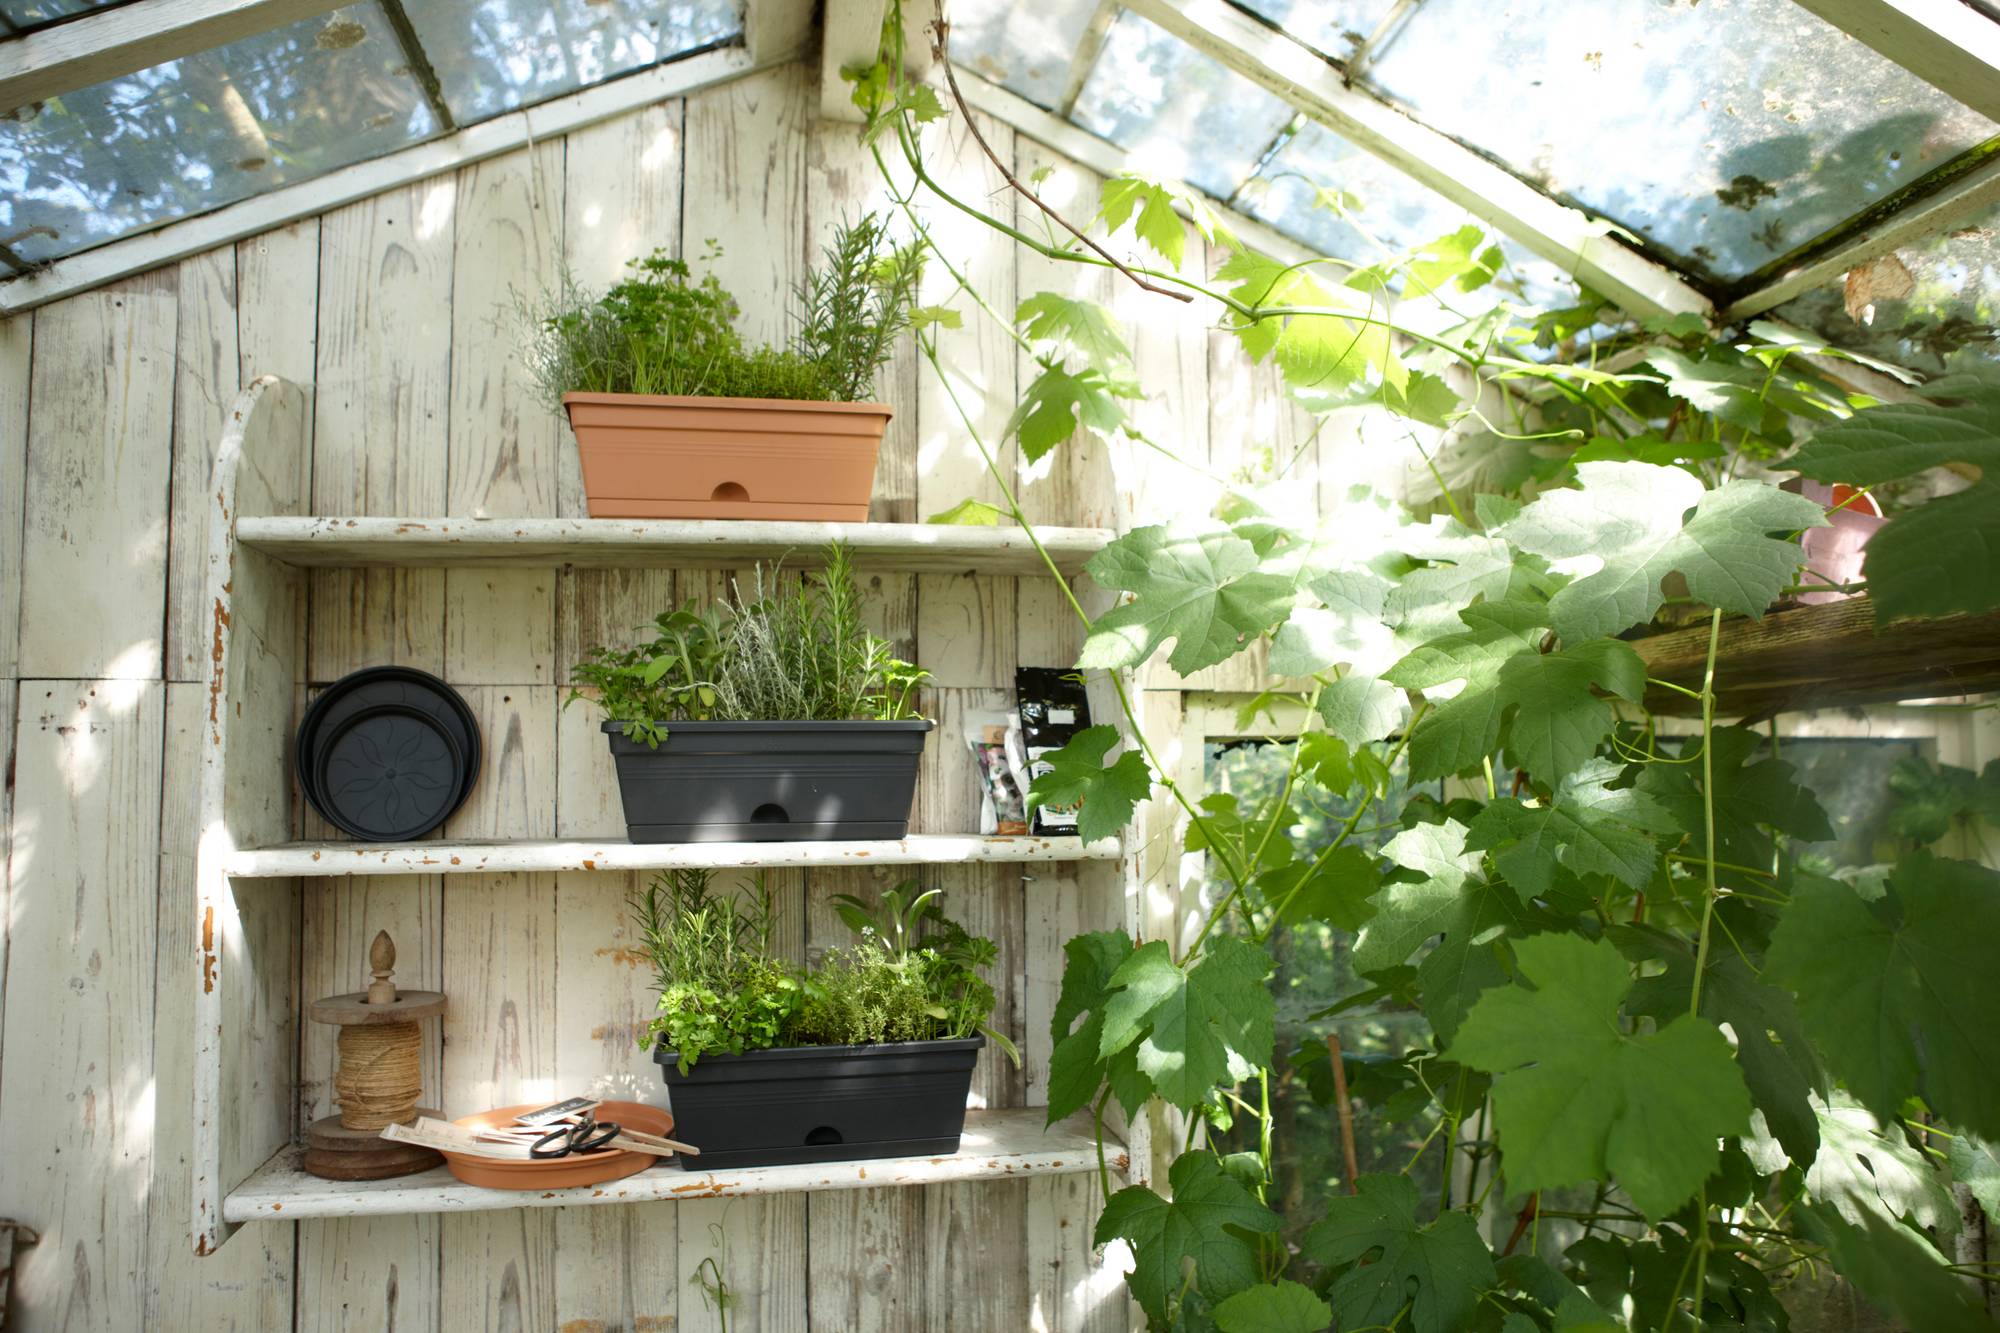 green basics balkonkasten mini 30cm living schwarz - elho® - Give room to  nature